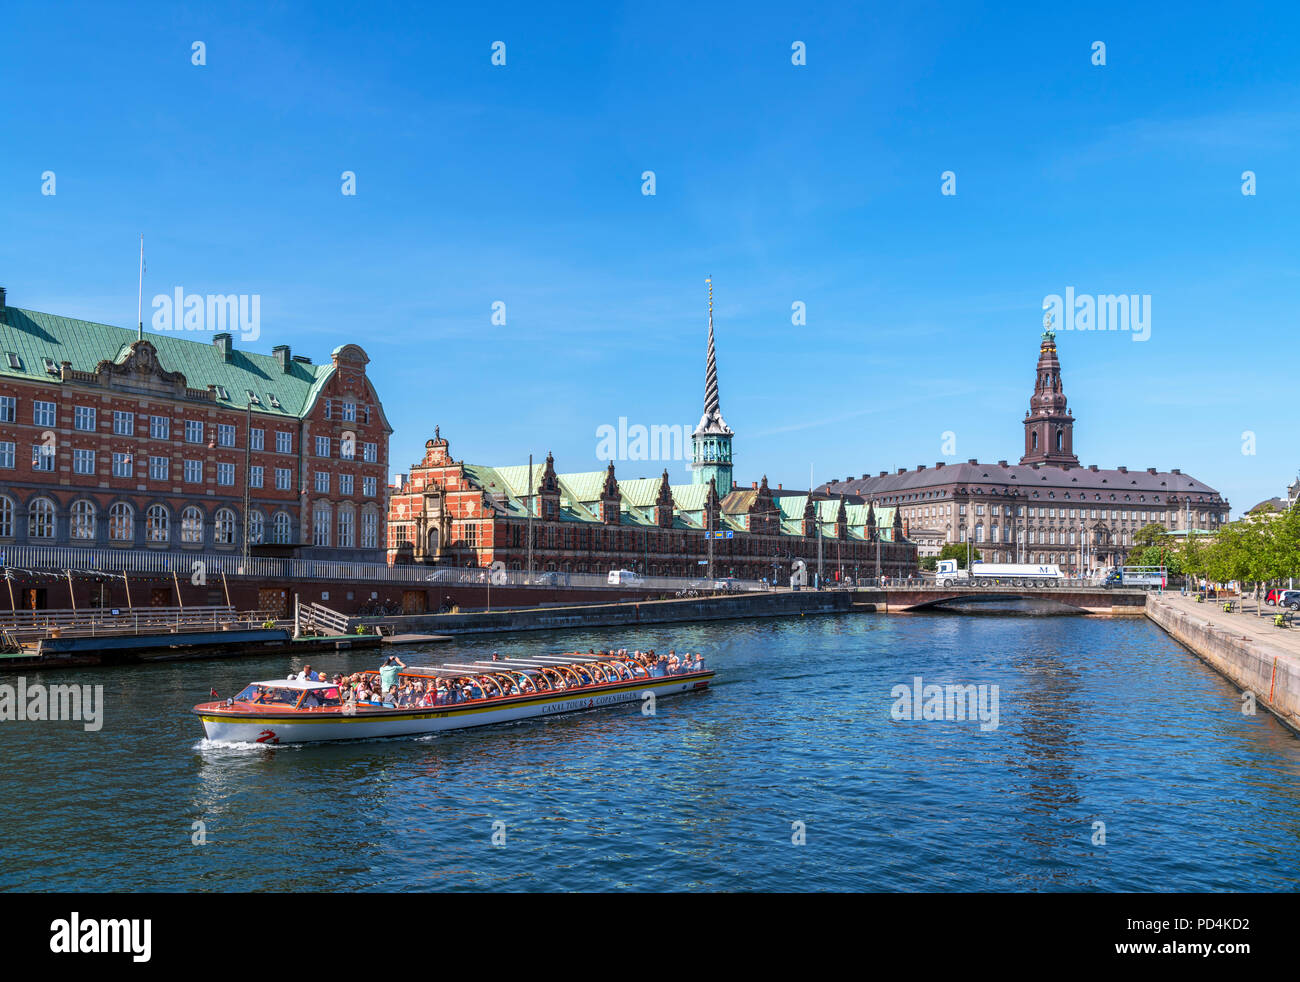 Crucero por el río en canal Slotsholmens mirando hacia la Børsen (la Bolsa) y Christiansborg Slot (Christiansborg Palace), Copenhague, Dinamarca Foto de stock